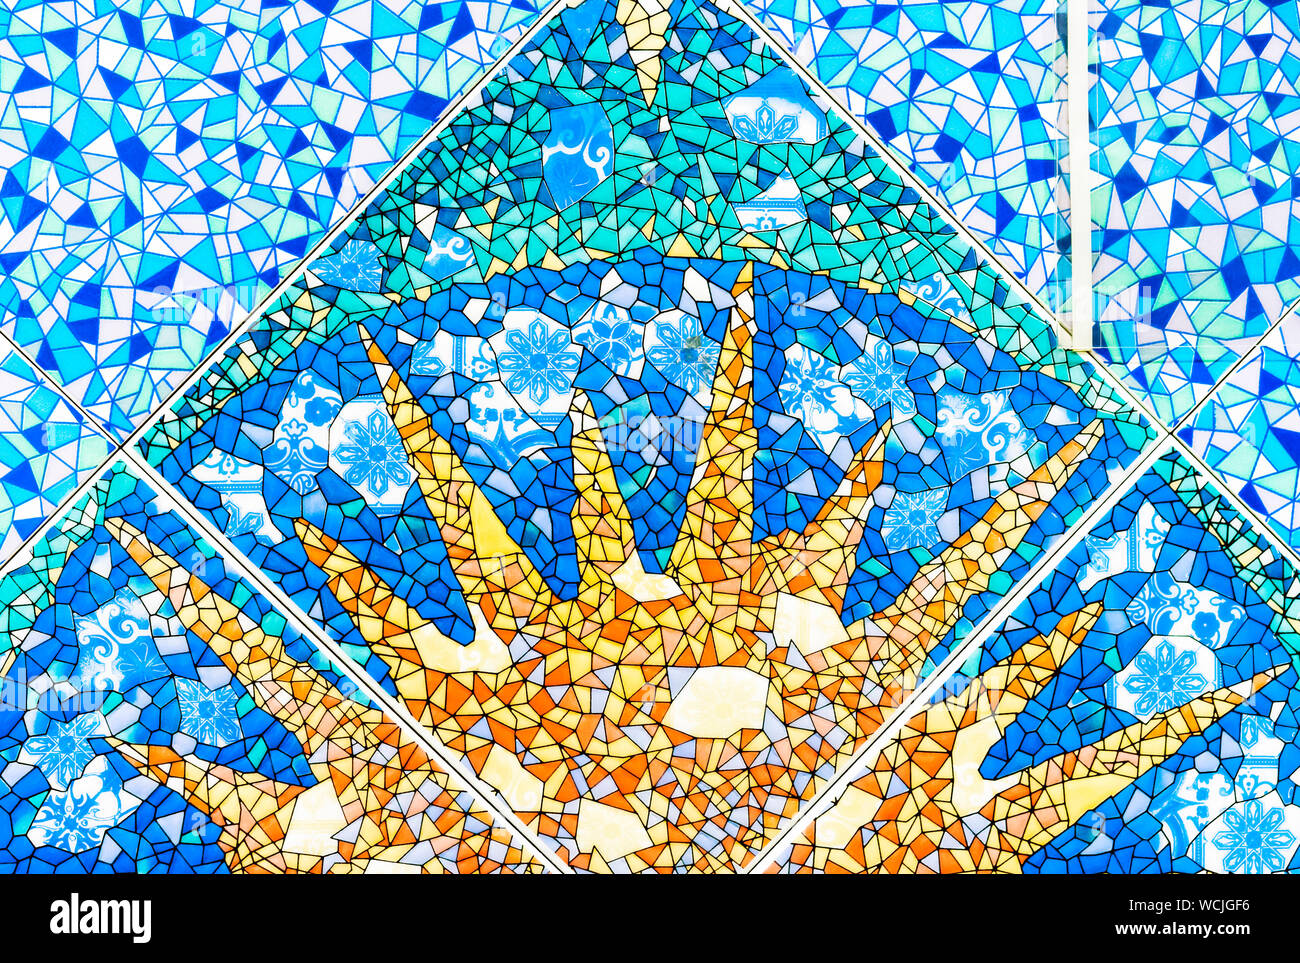 Blau Keramik Mosaik Fliese mit das Bild der Sonne. Hintergrund und die  Textur von Keramikfliesen Stockfotografie - Alamy